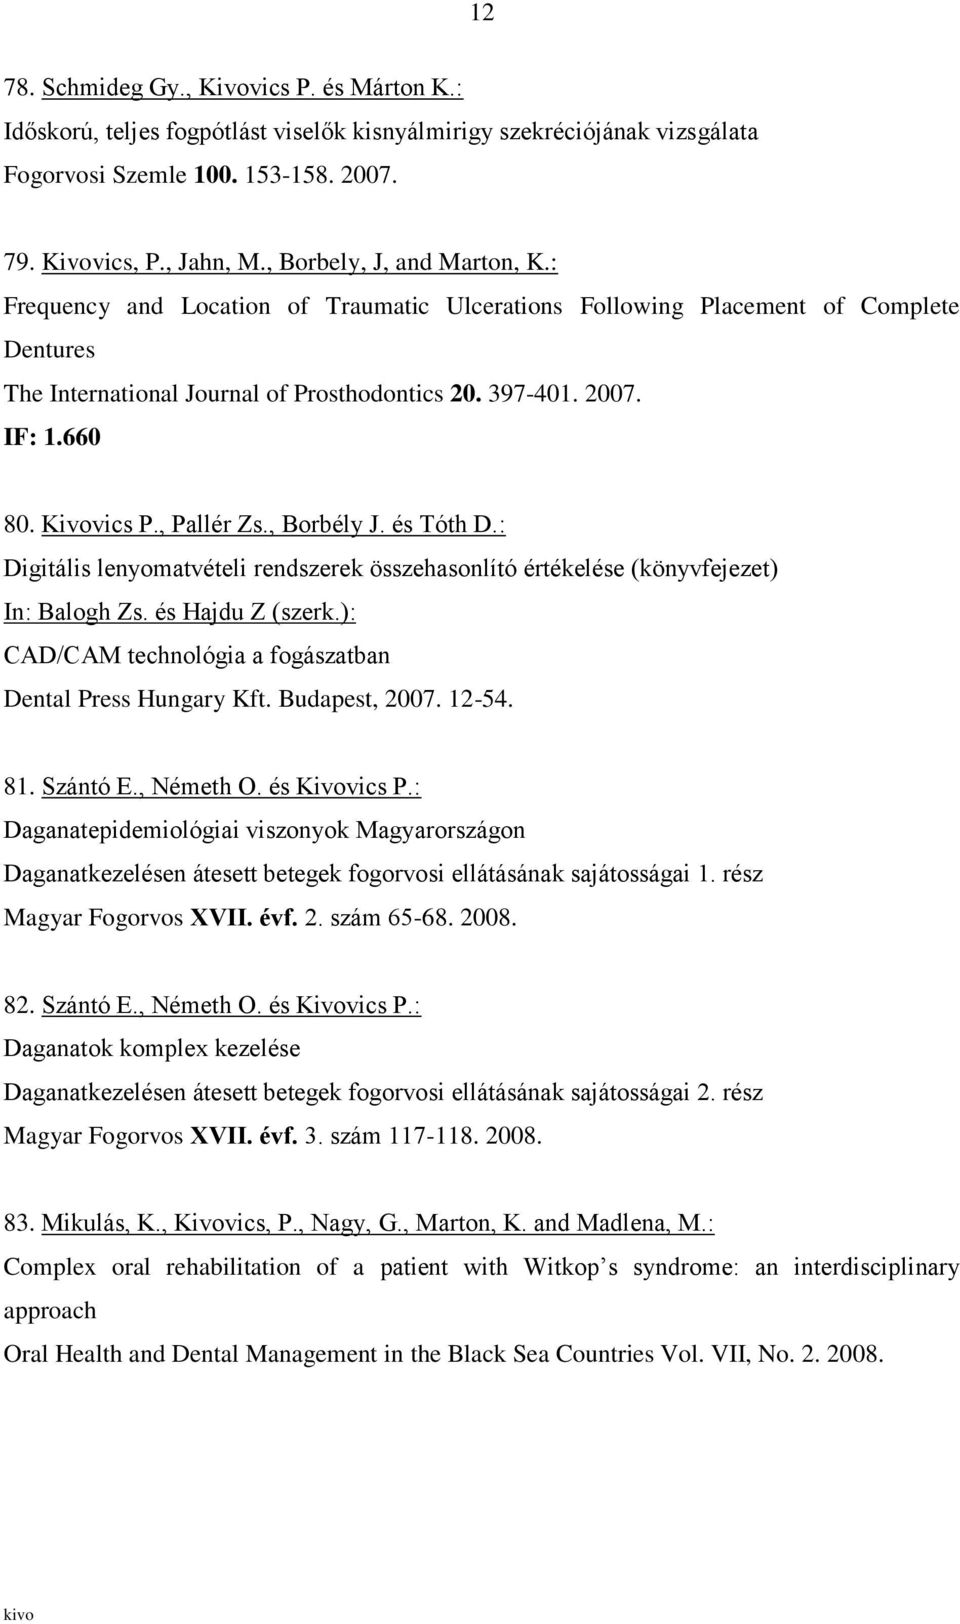 Kivovics P., Pallér Zs., Borbély J. és Tóth D.: Digitális lenyomatvételi rendszerek összehasonlító értékelése (könyvfejezet) In: Balogh Zs. és Hajdu Z (szerk.